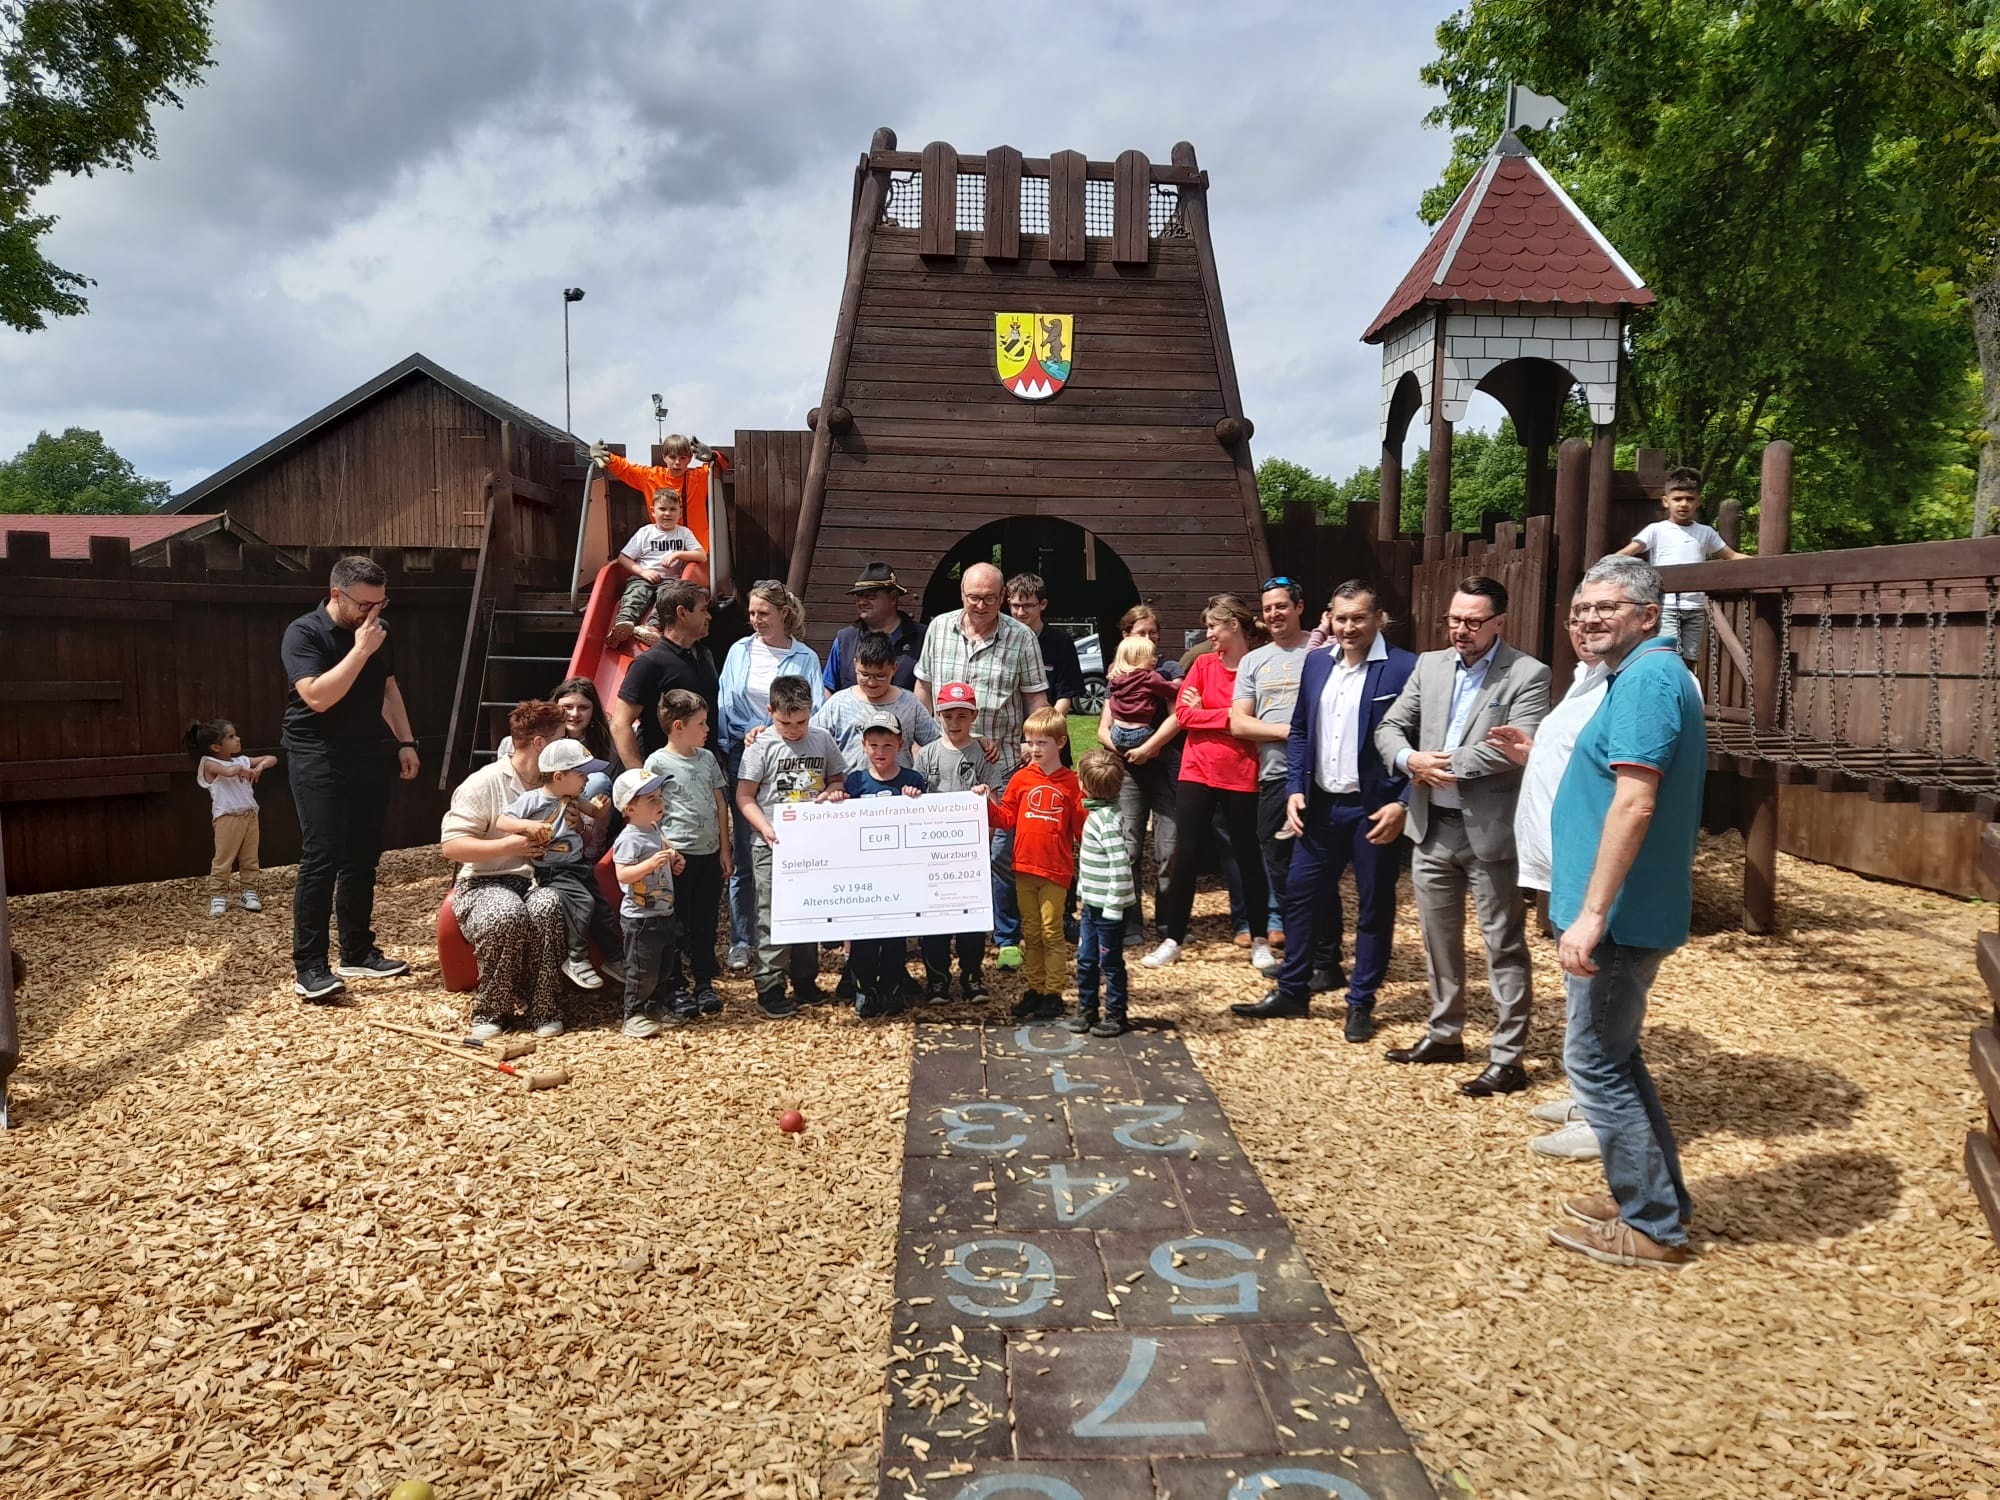 Foto: Kurt Zink | Die Altenschönbacher Kinder und die Eltern sagen "Danke" für den Spendenscheck über 2000 Euro der Sparkasse Mainfranken Würzburg.